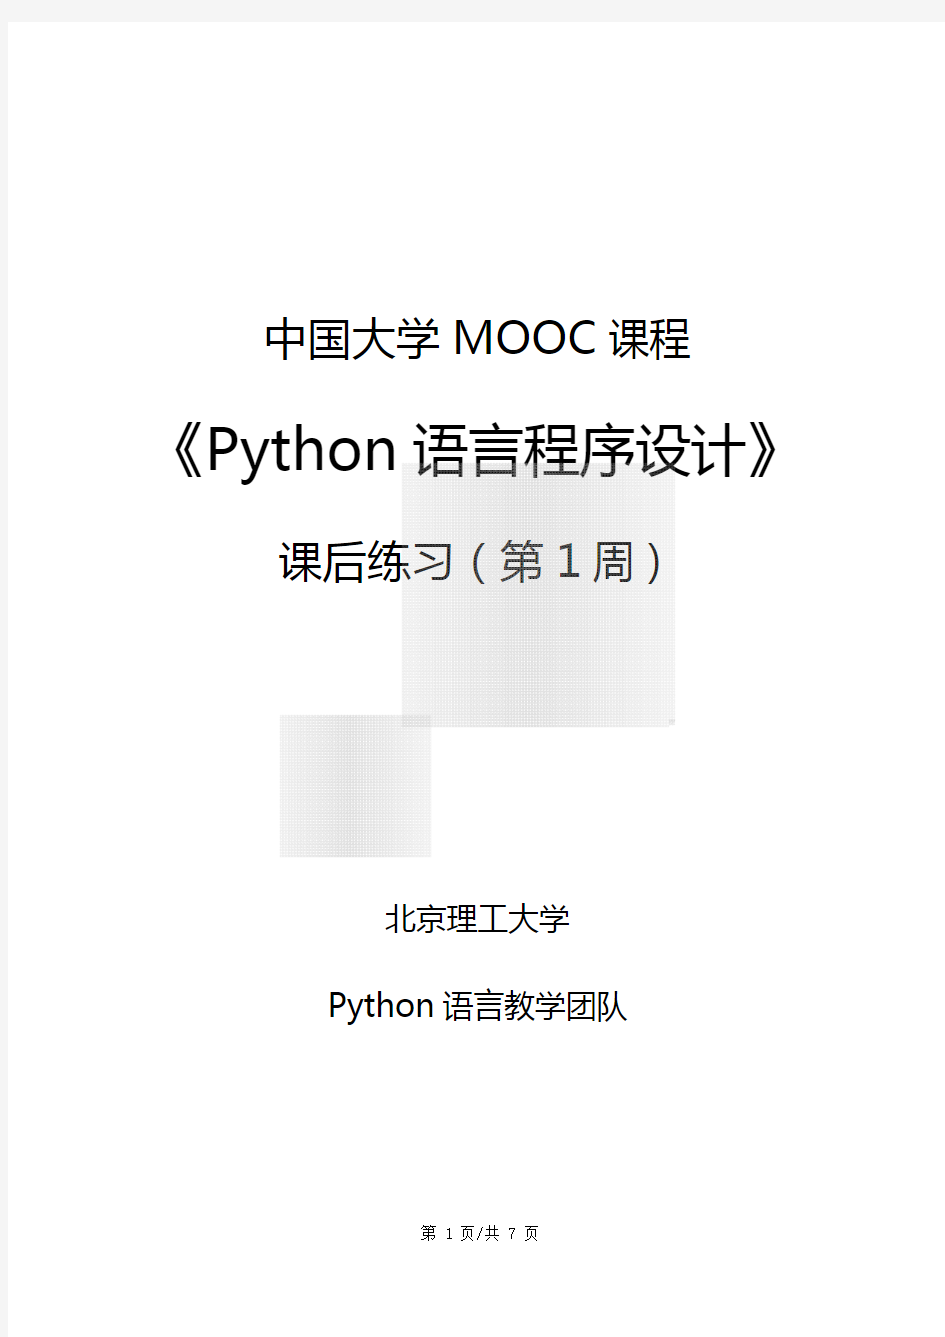 Python语言程序设计-课后练习-第1周